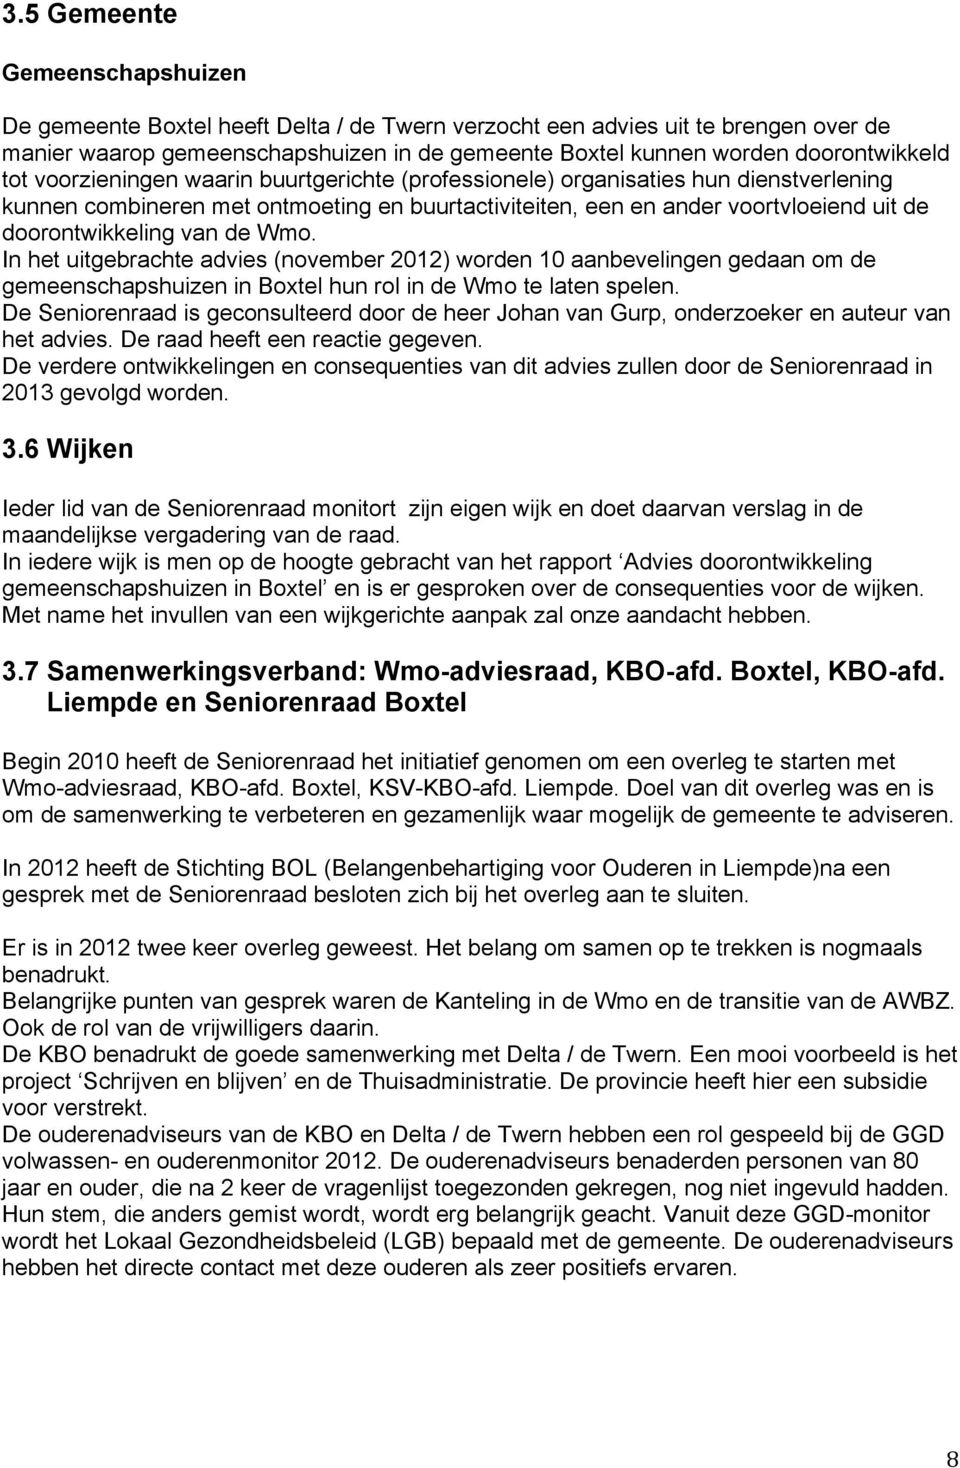 doorontwikkeling van de Wmo. In het uitgebrachte advies (november 2012) worden 10 aanbevelingen gedaan om de gemeenschapshuizen in Boxtel hun rol in de Wmo te laten spelen.